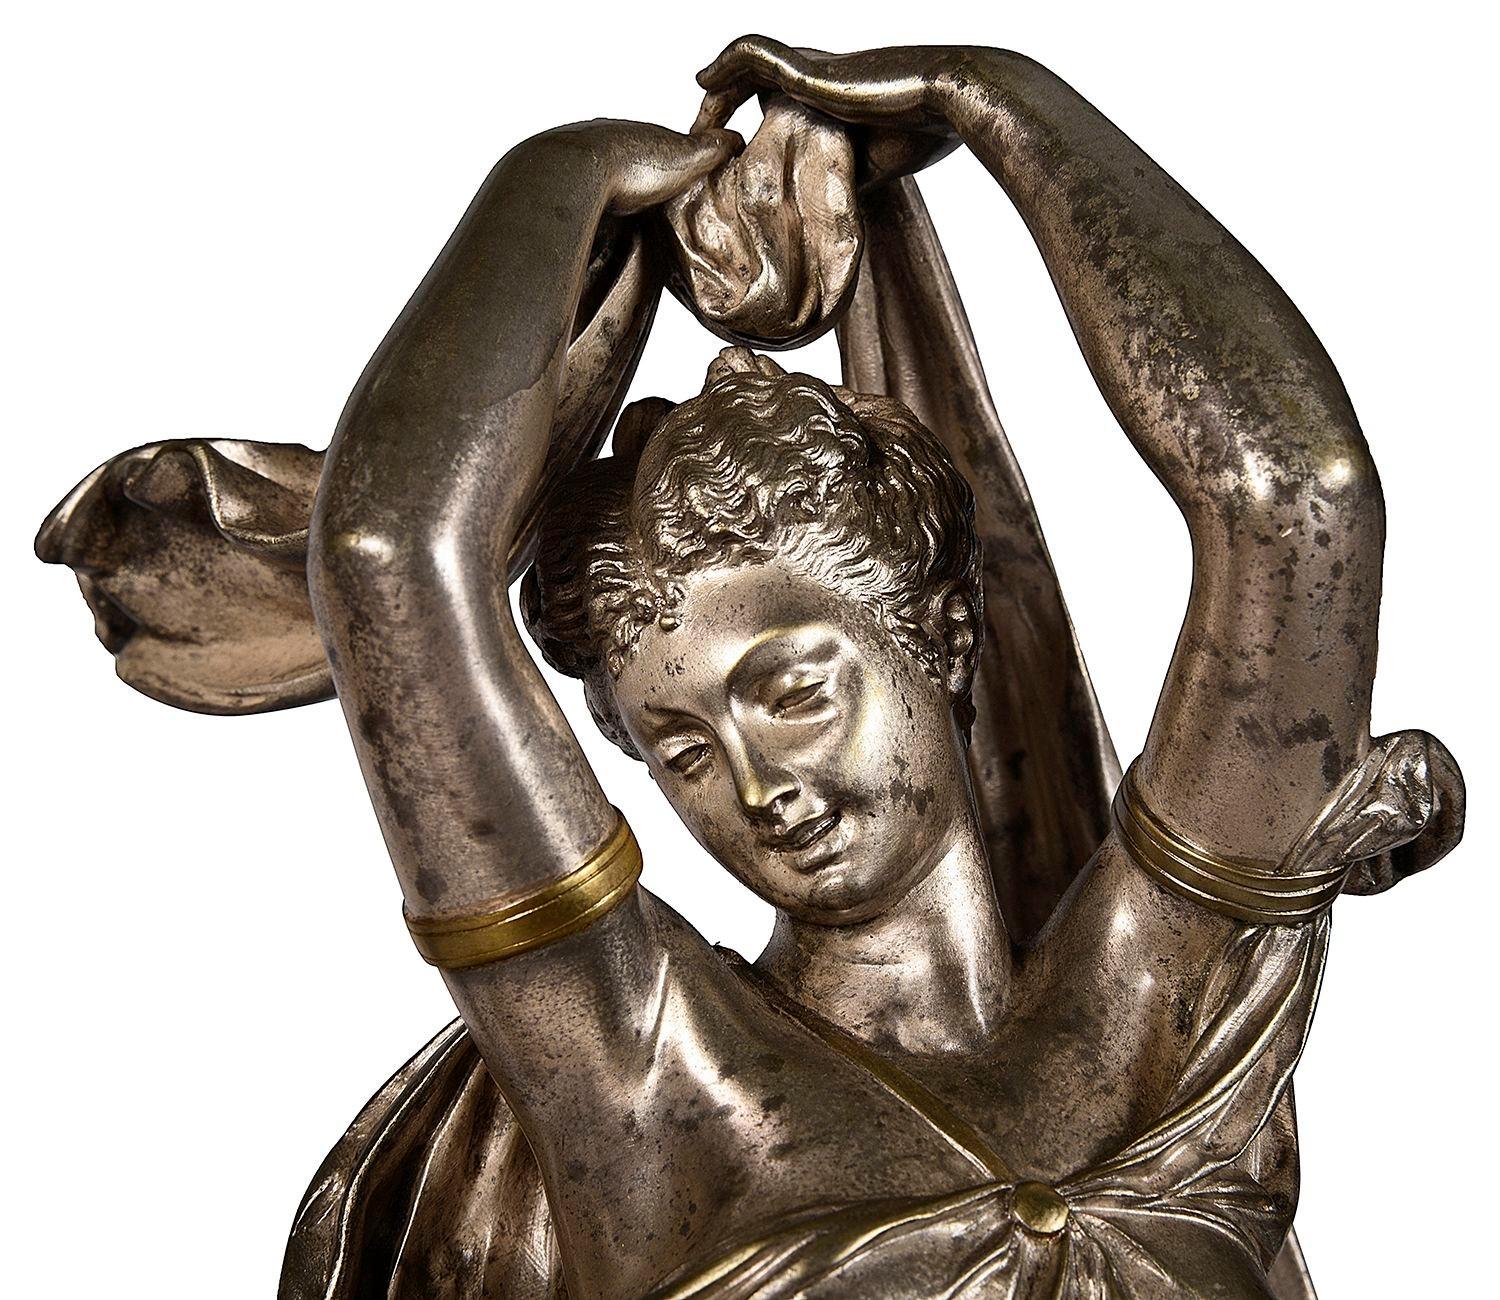 Charmante statue classique française en bronze argenté du XIXe siècle représentant une mère et ses enfants en train de danser, montée sur une base dorée.
Signé ; transporteur
Albert-Ernest Carrier-Belleuse était un sculpteur français. Il est l'un